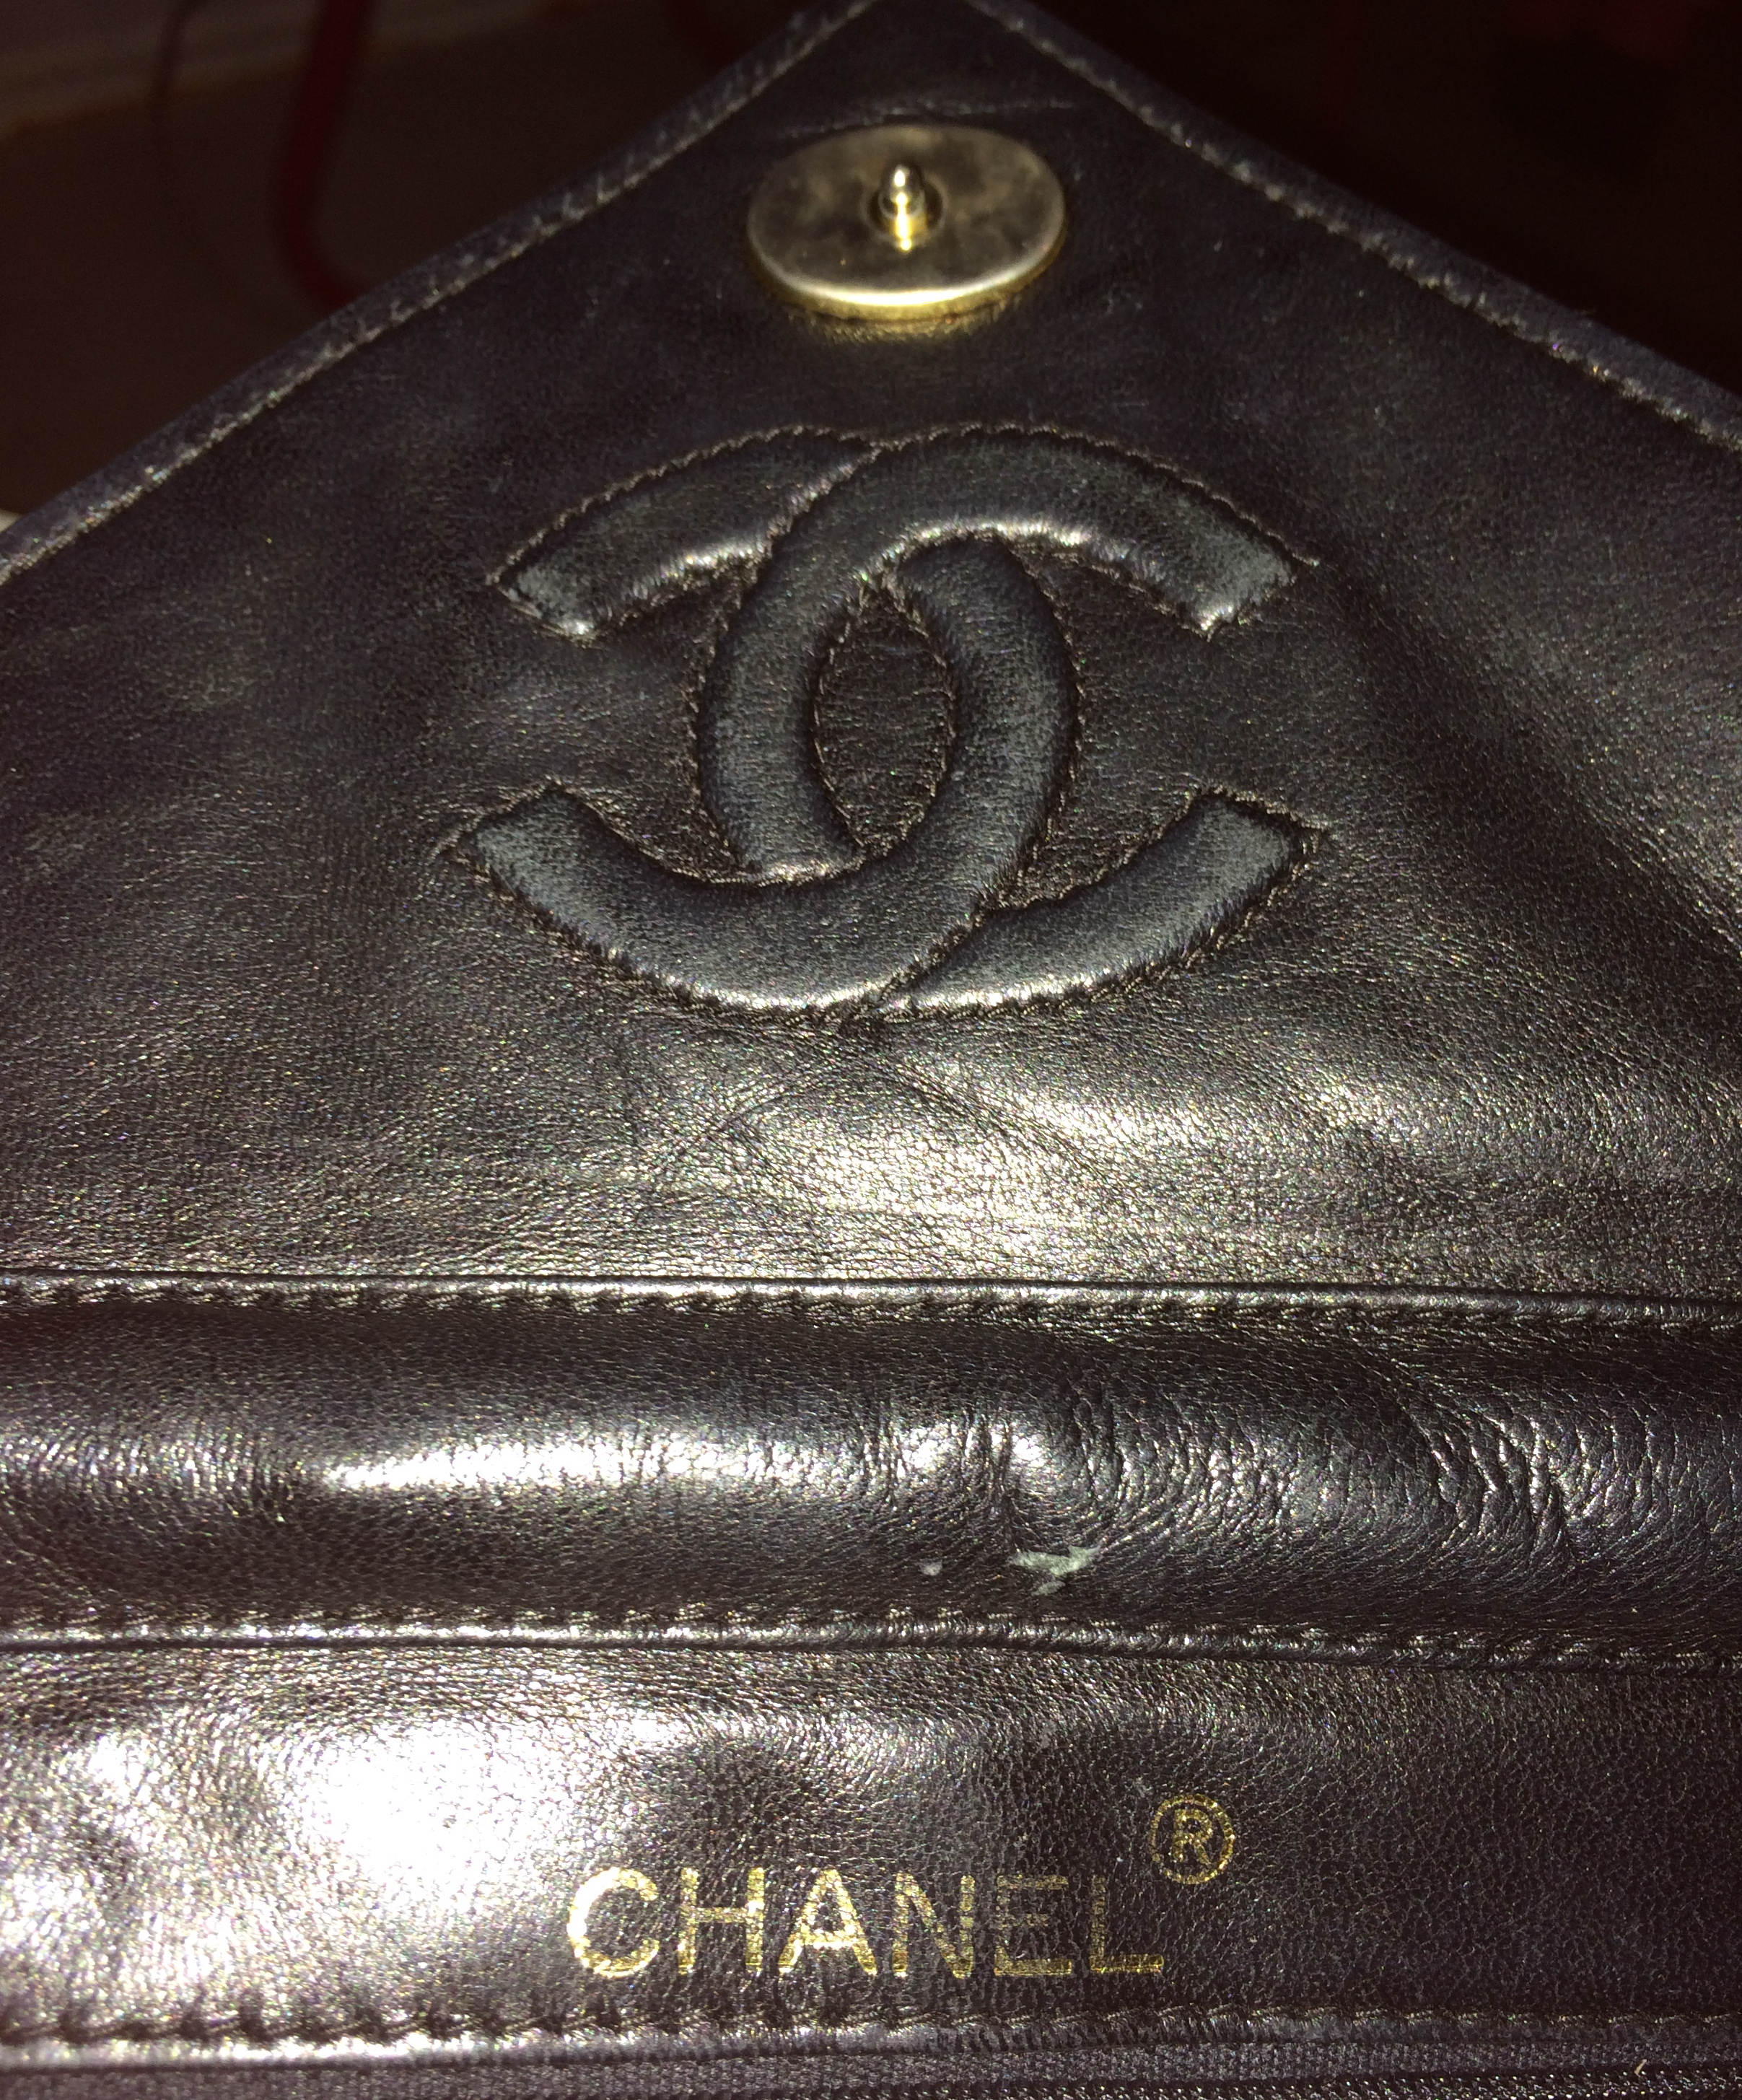 Lot 262  A vintage Chanel black satin evening bag